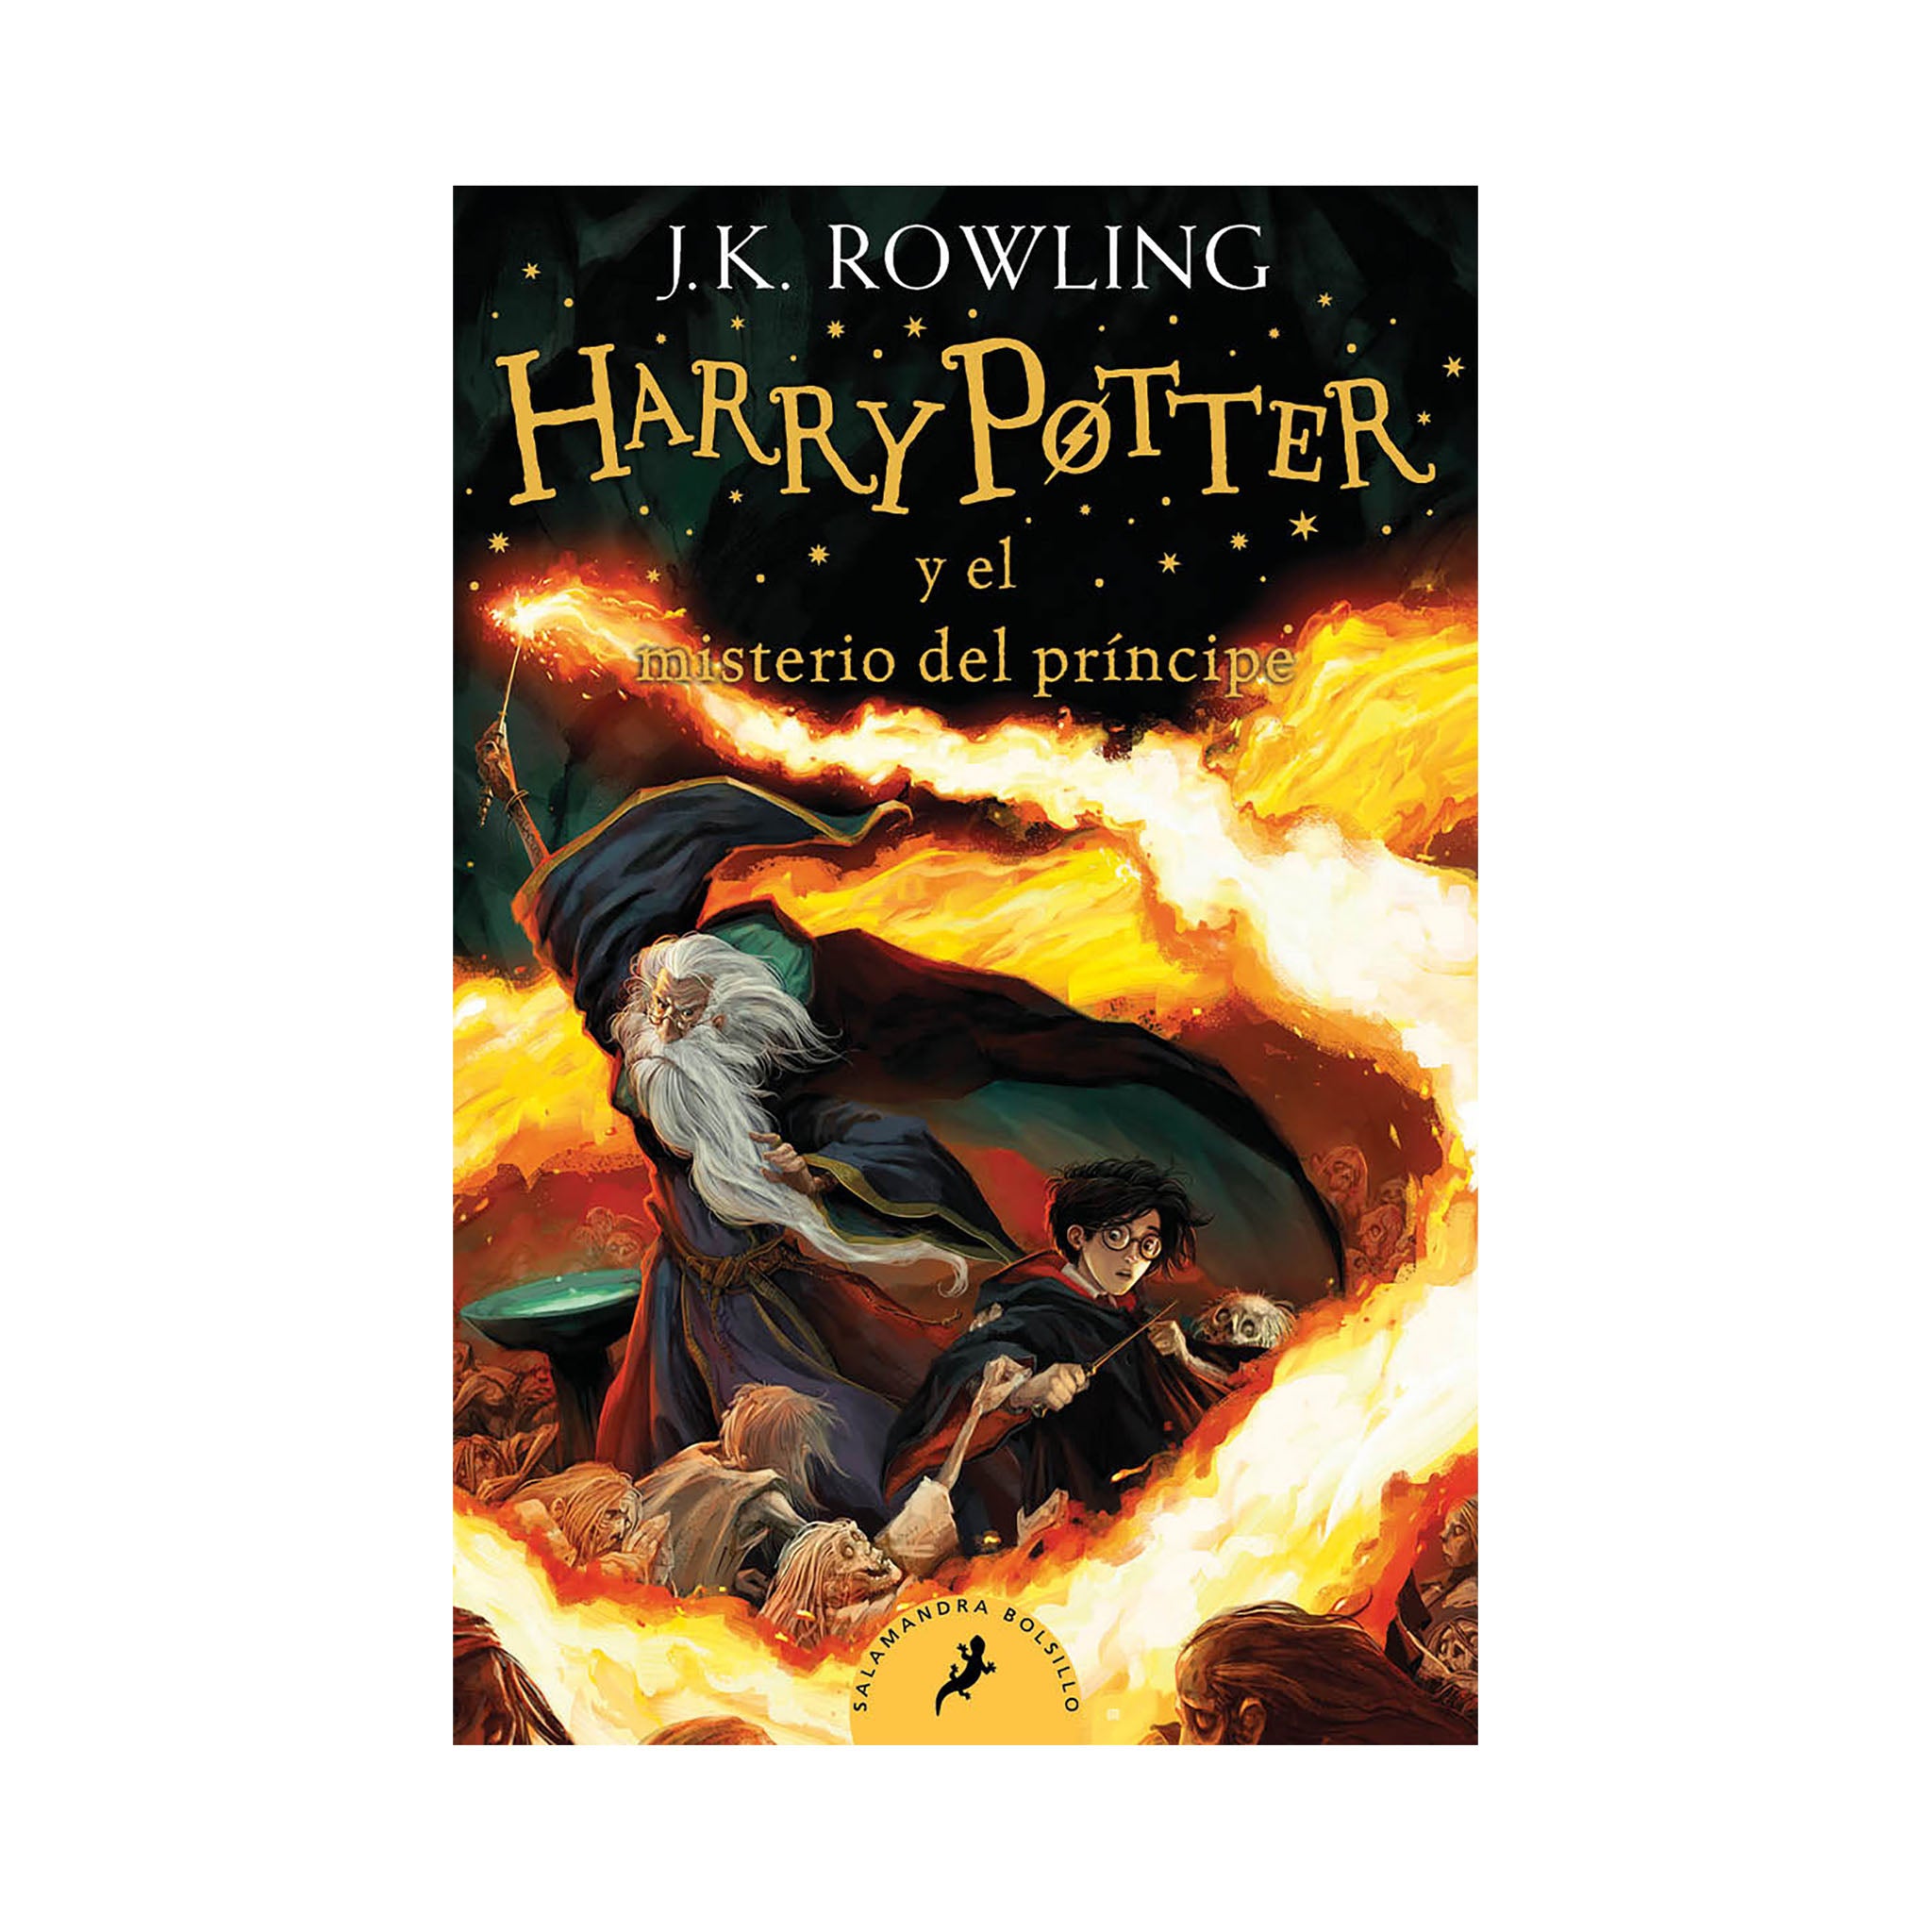 Harry Potter y el misterio del principe (HP6)